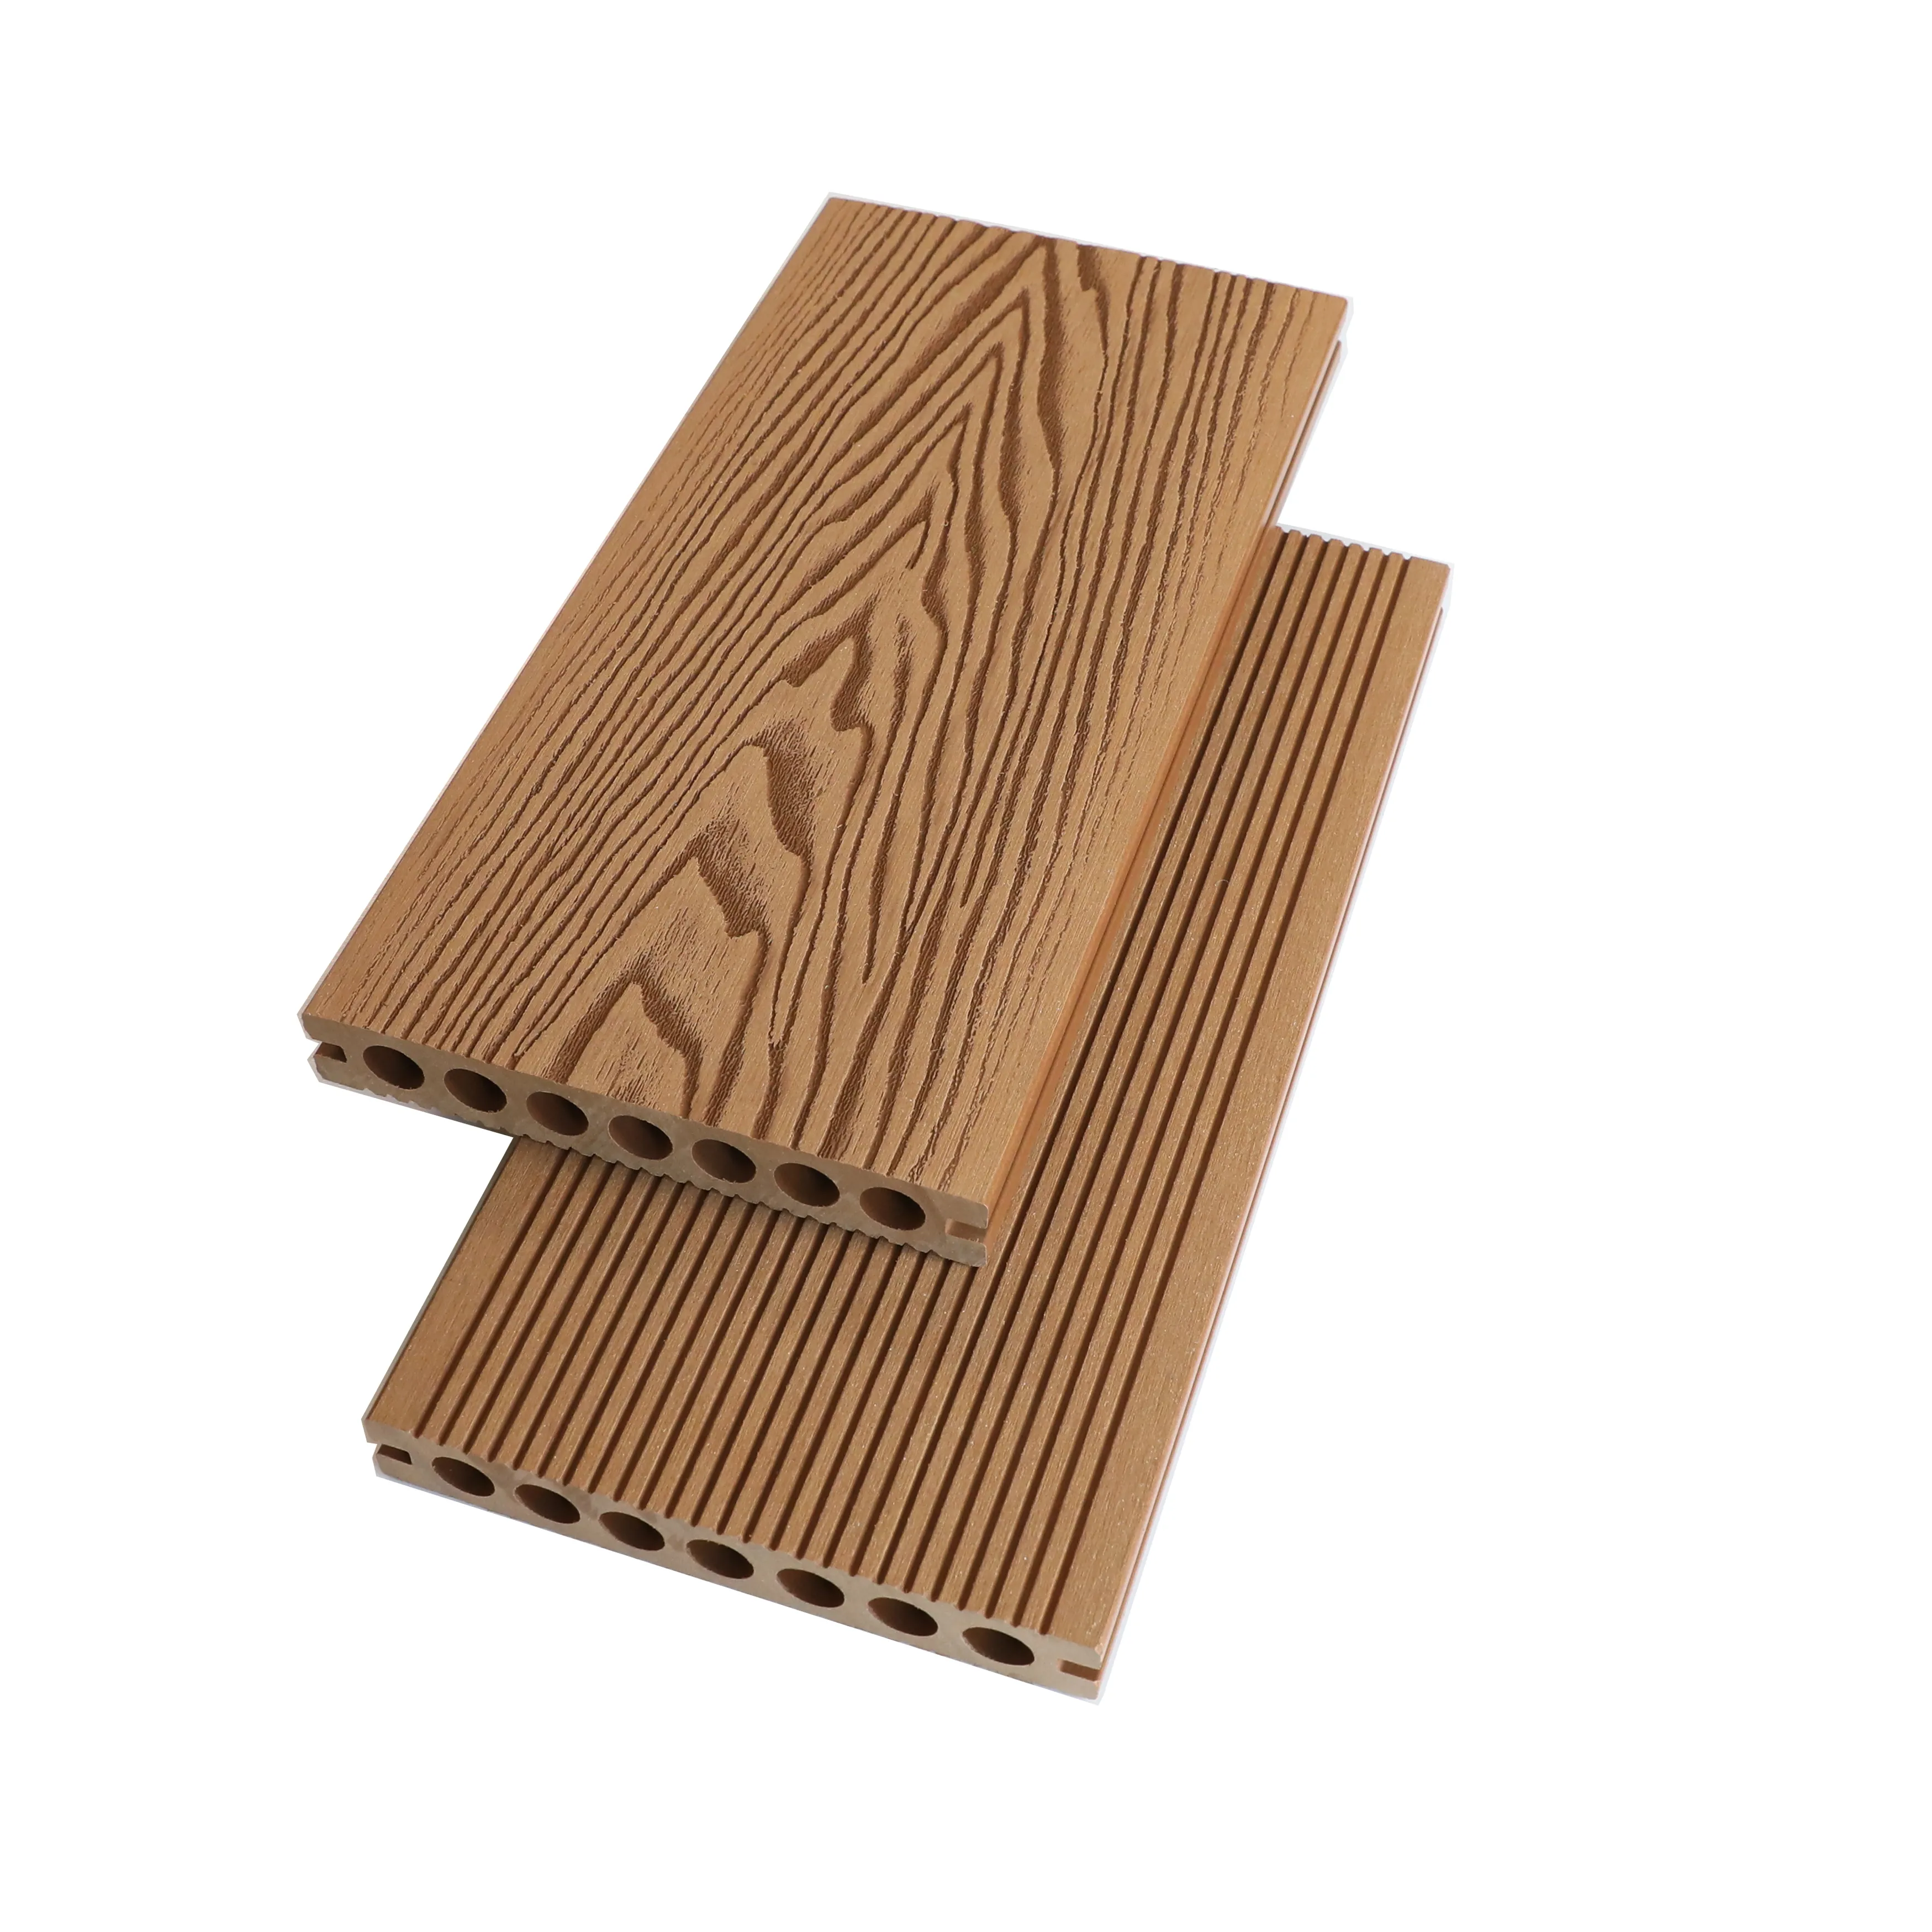 Cubierta gris de madera dura de teca de ghana, suelo de madera dura, cubierta compuesta